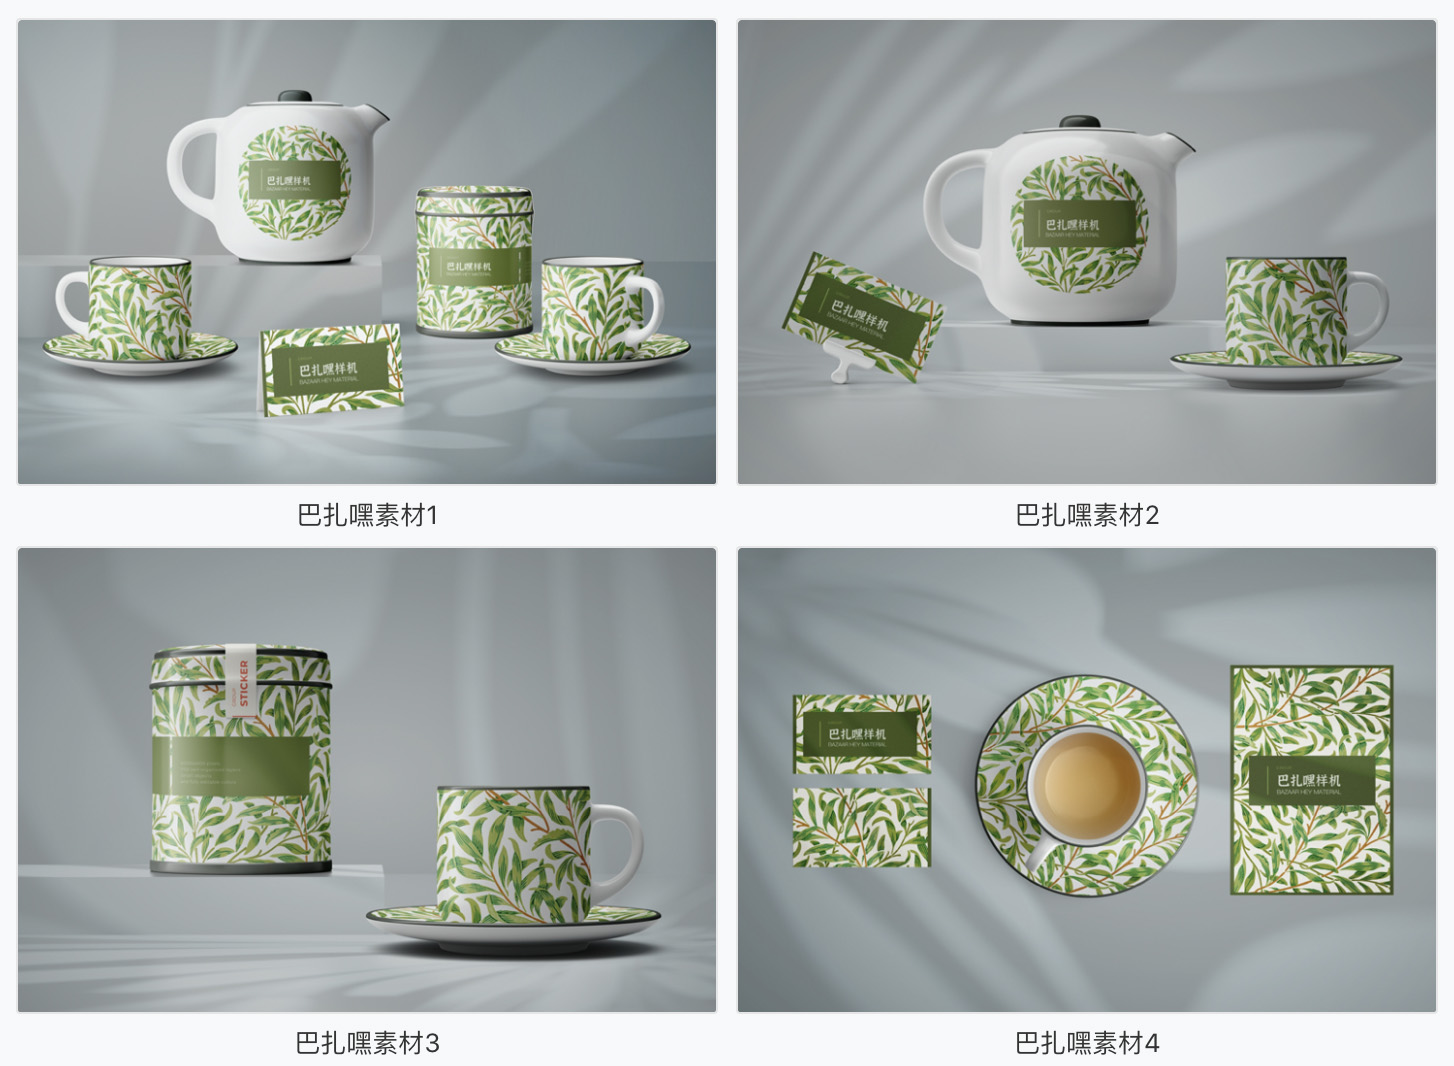 【茶具样机】7套茶具茶叶品牌包装设计茶壶茶杯子样机效果图展示PSD智能贴图素材